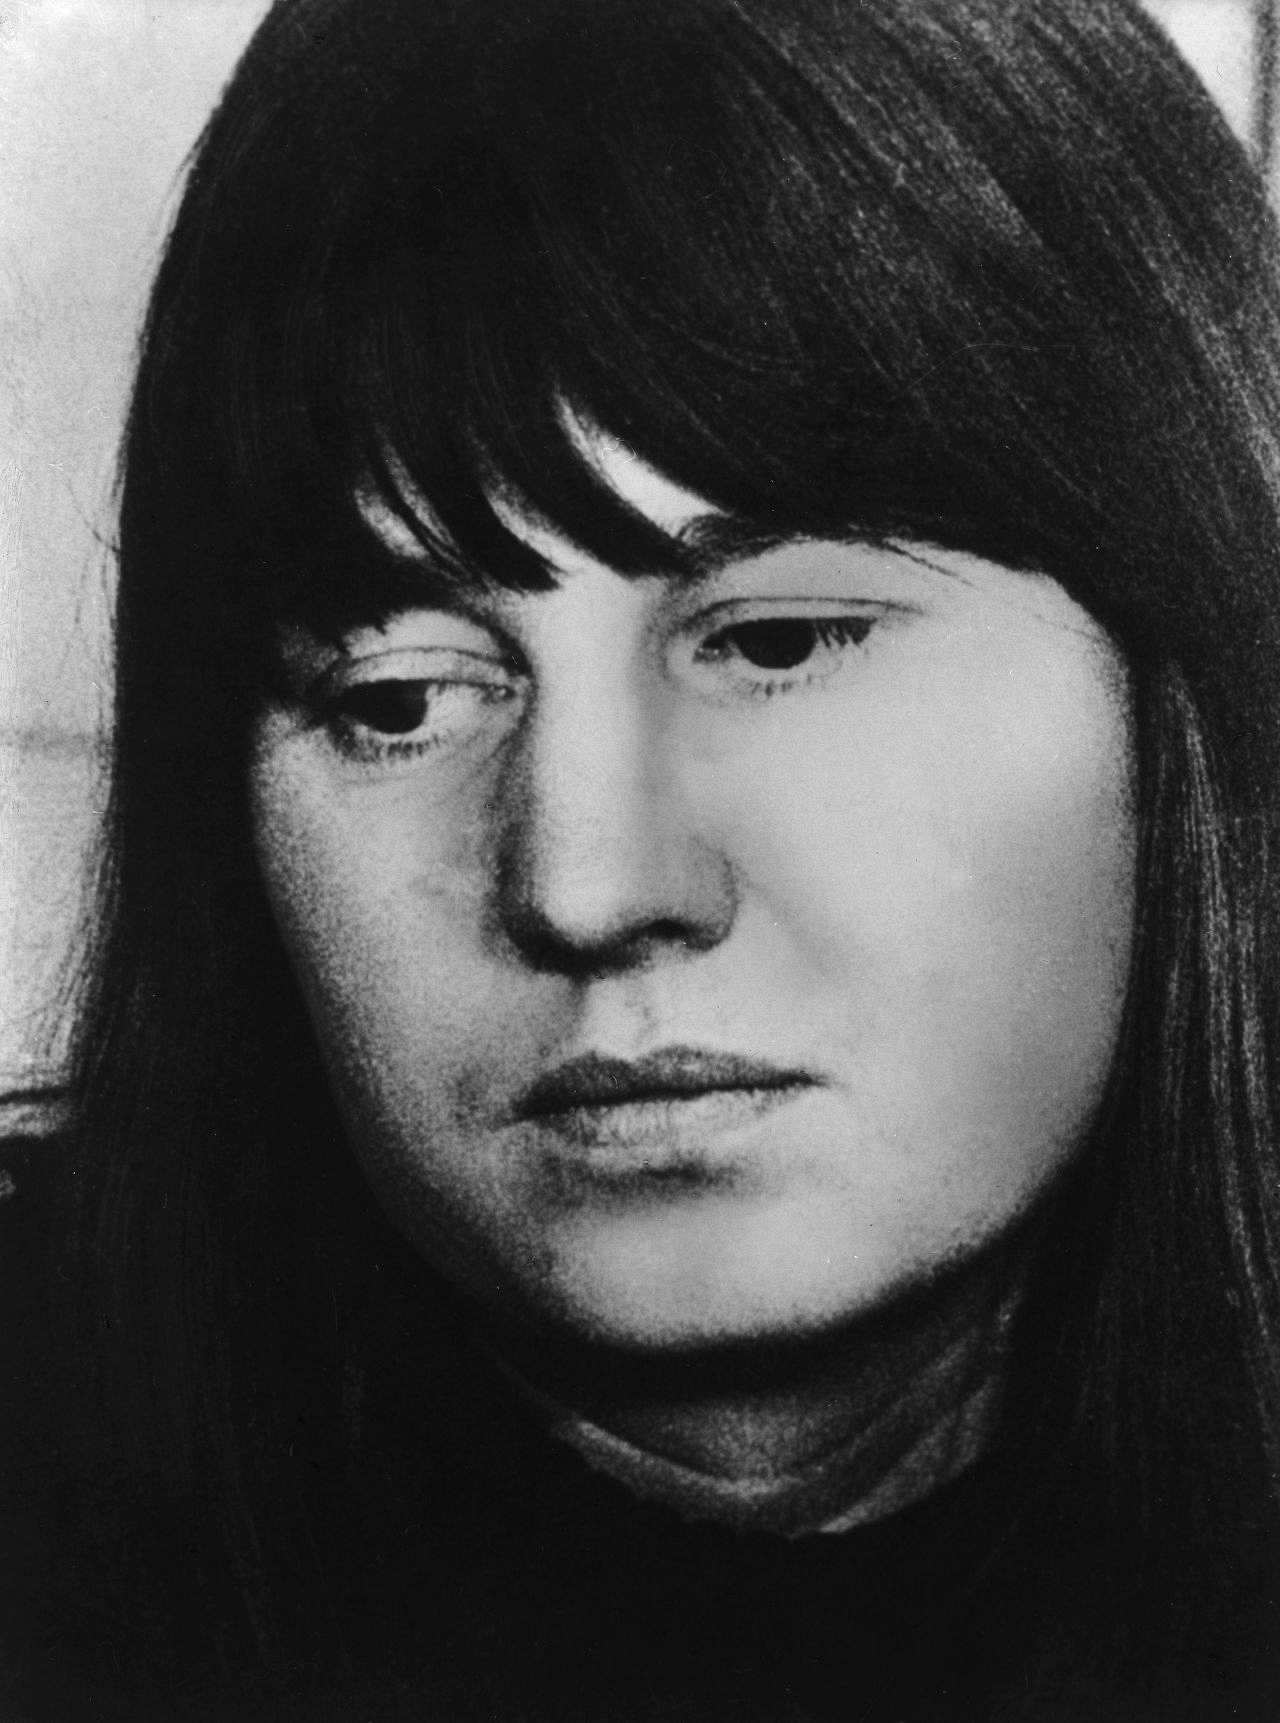 Porträtfotografie der Journalistin und RAF-Terroristin Ulrike Meinhof, ca. 1975.